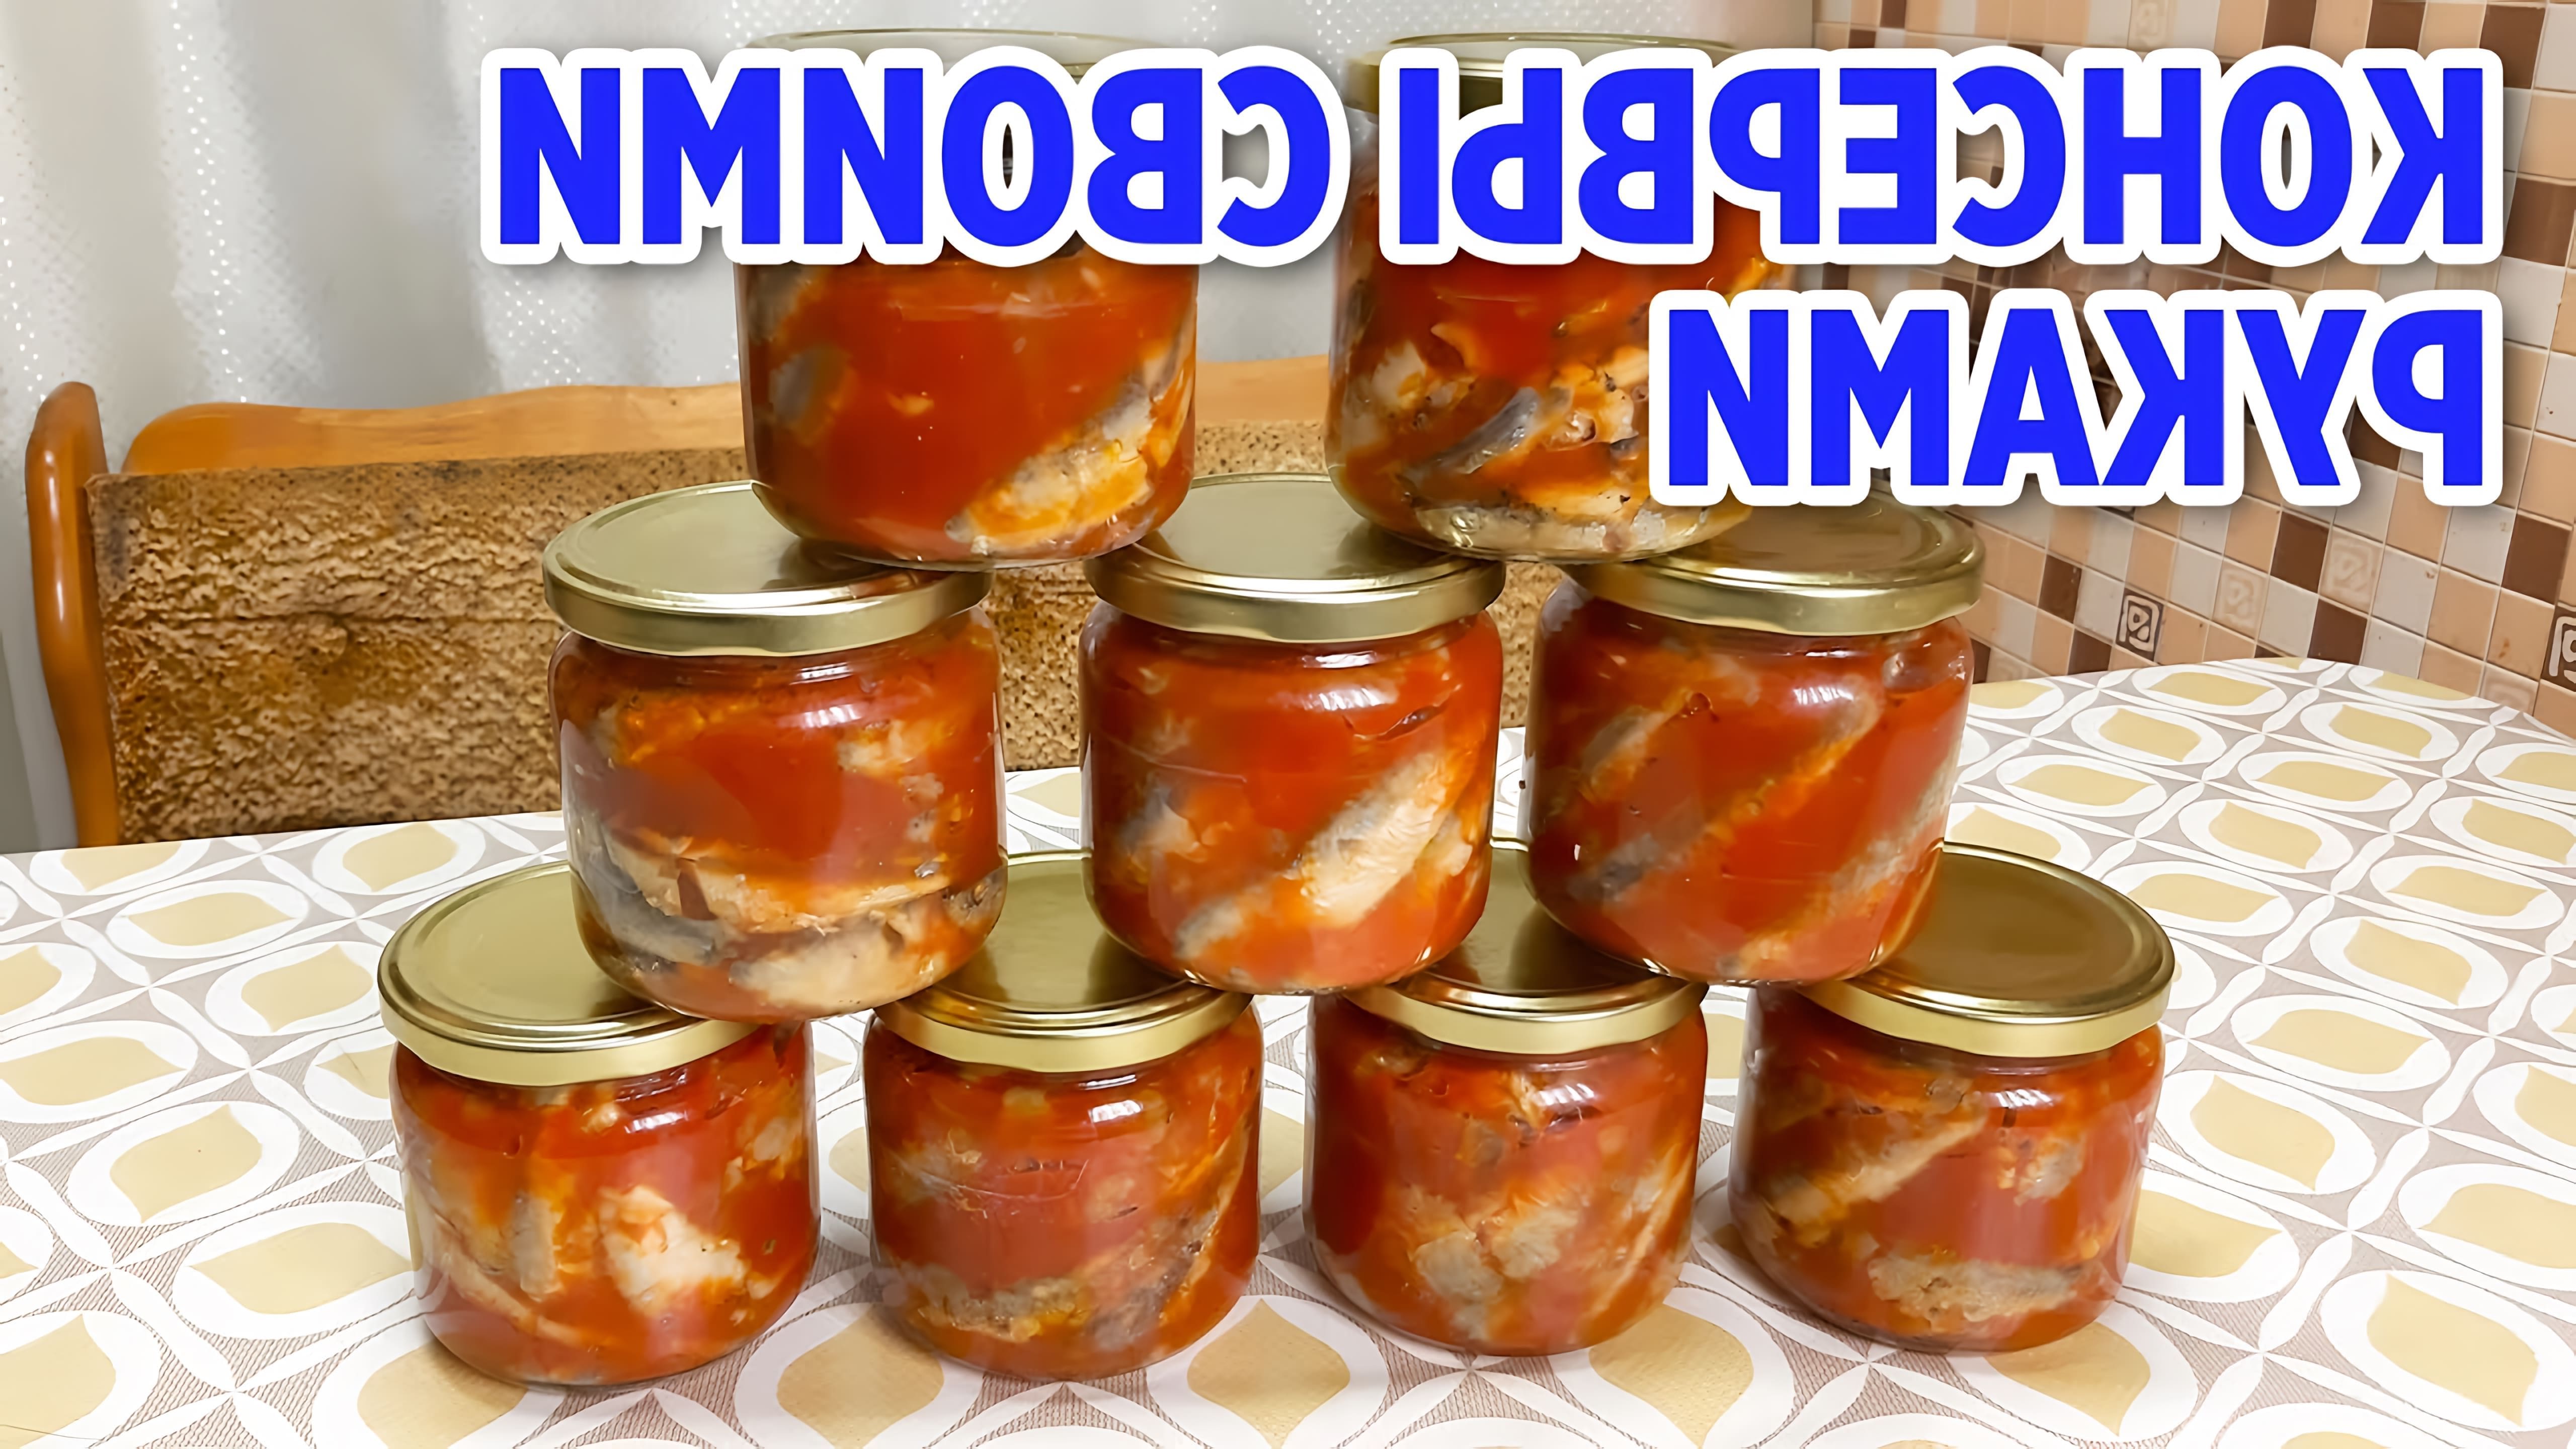 В этом видео Маруся показывает, как приготовить кильку в томатном соусе в домашних условиях